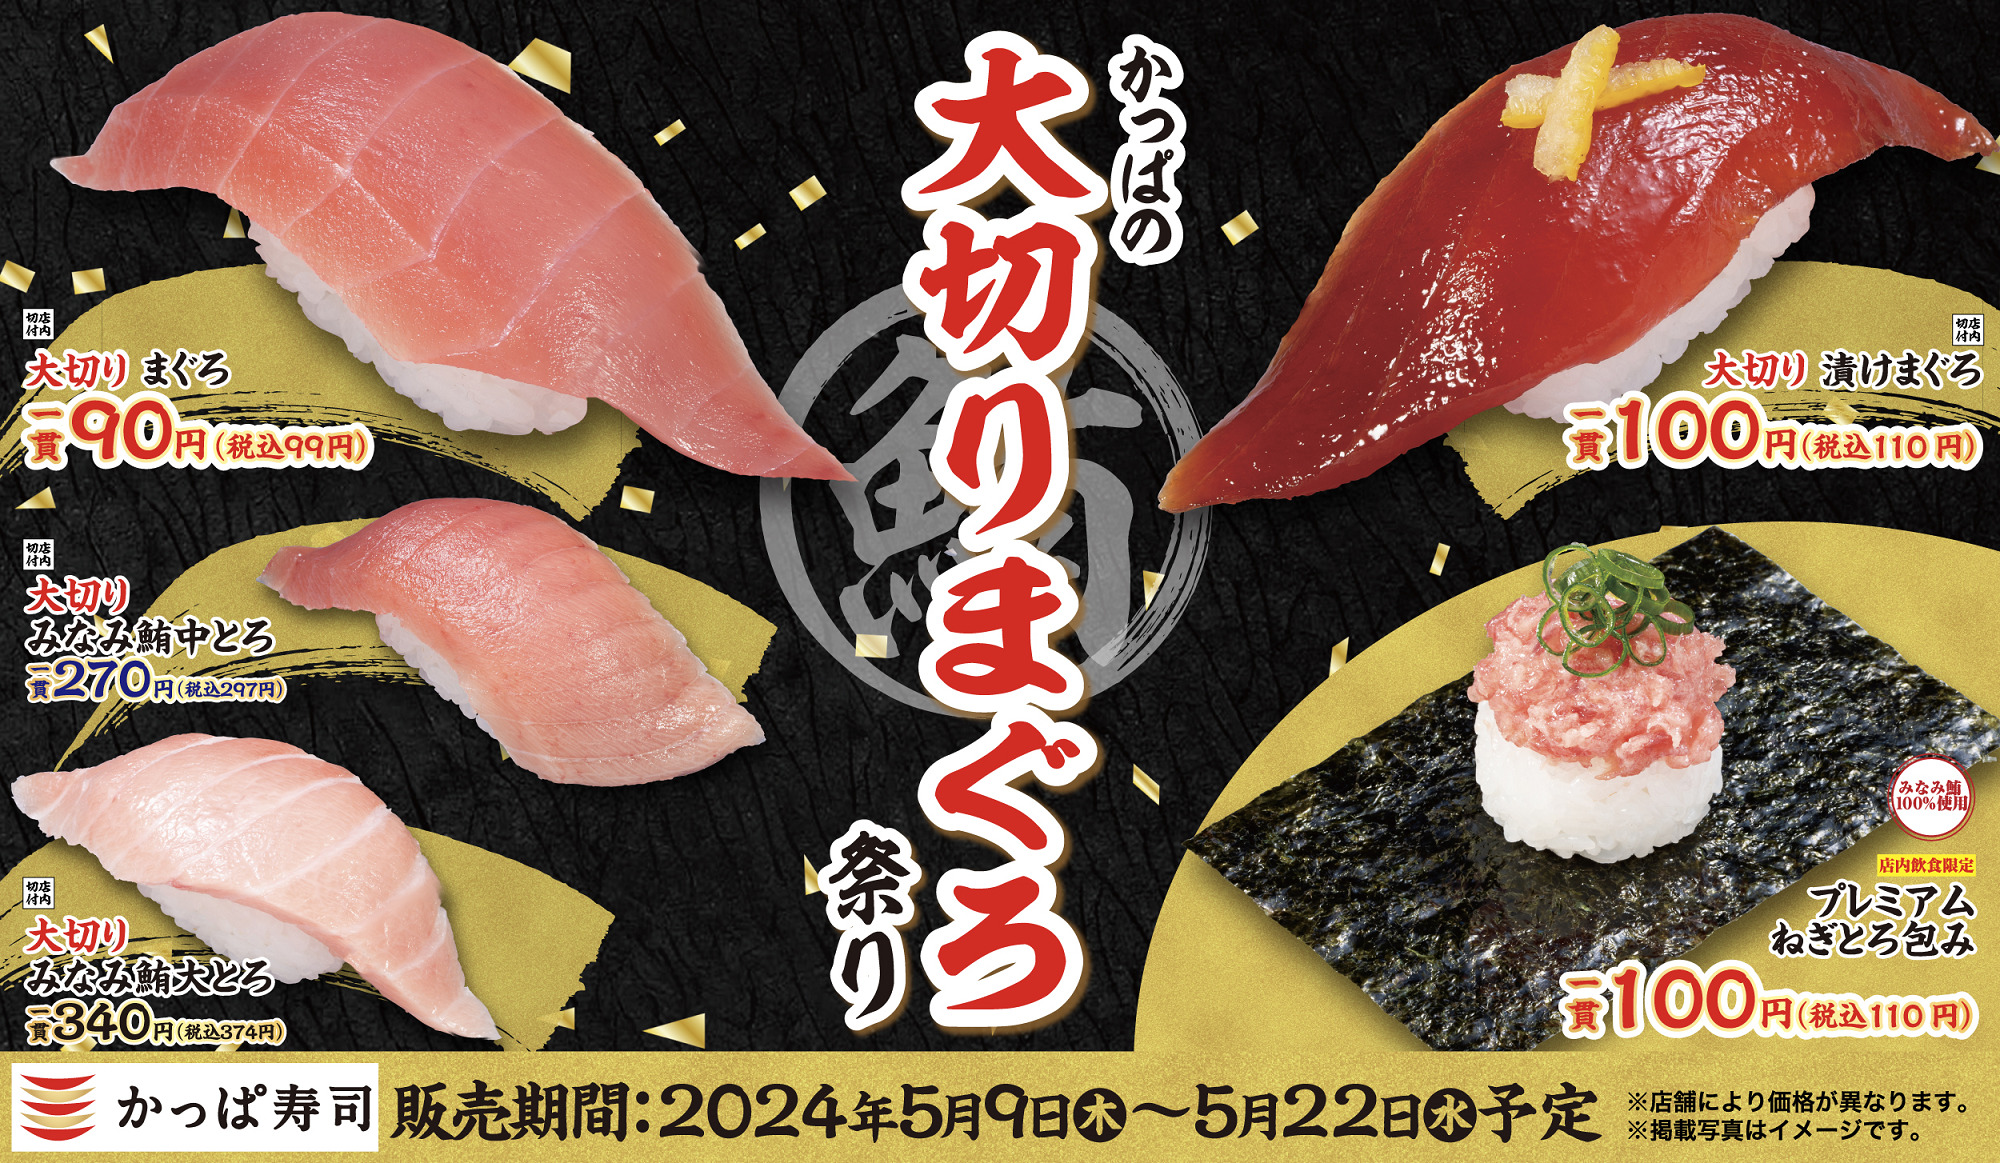 かっぱ寿司「かっぱの大切りまぐろ祭り」開催